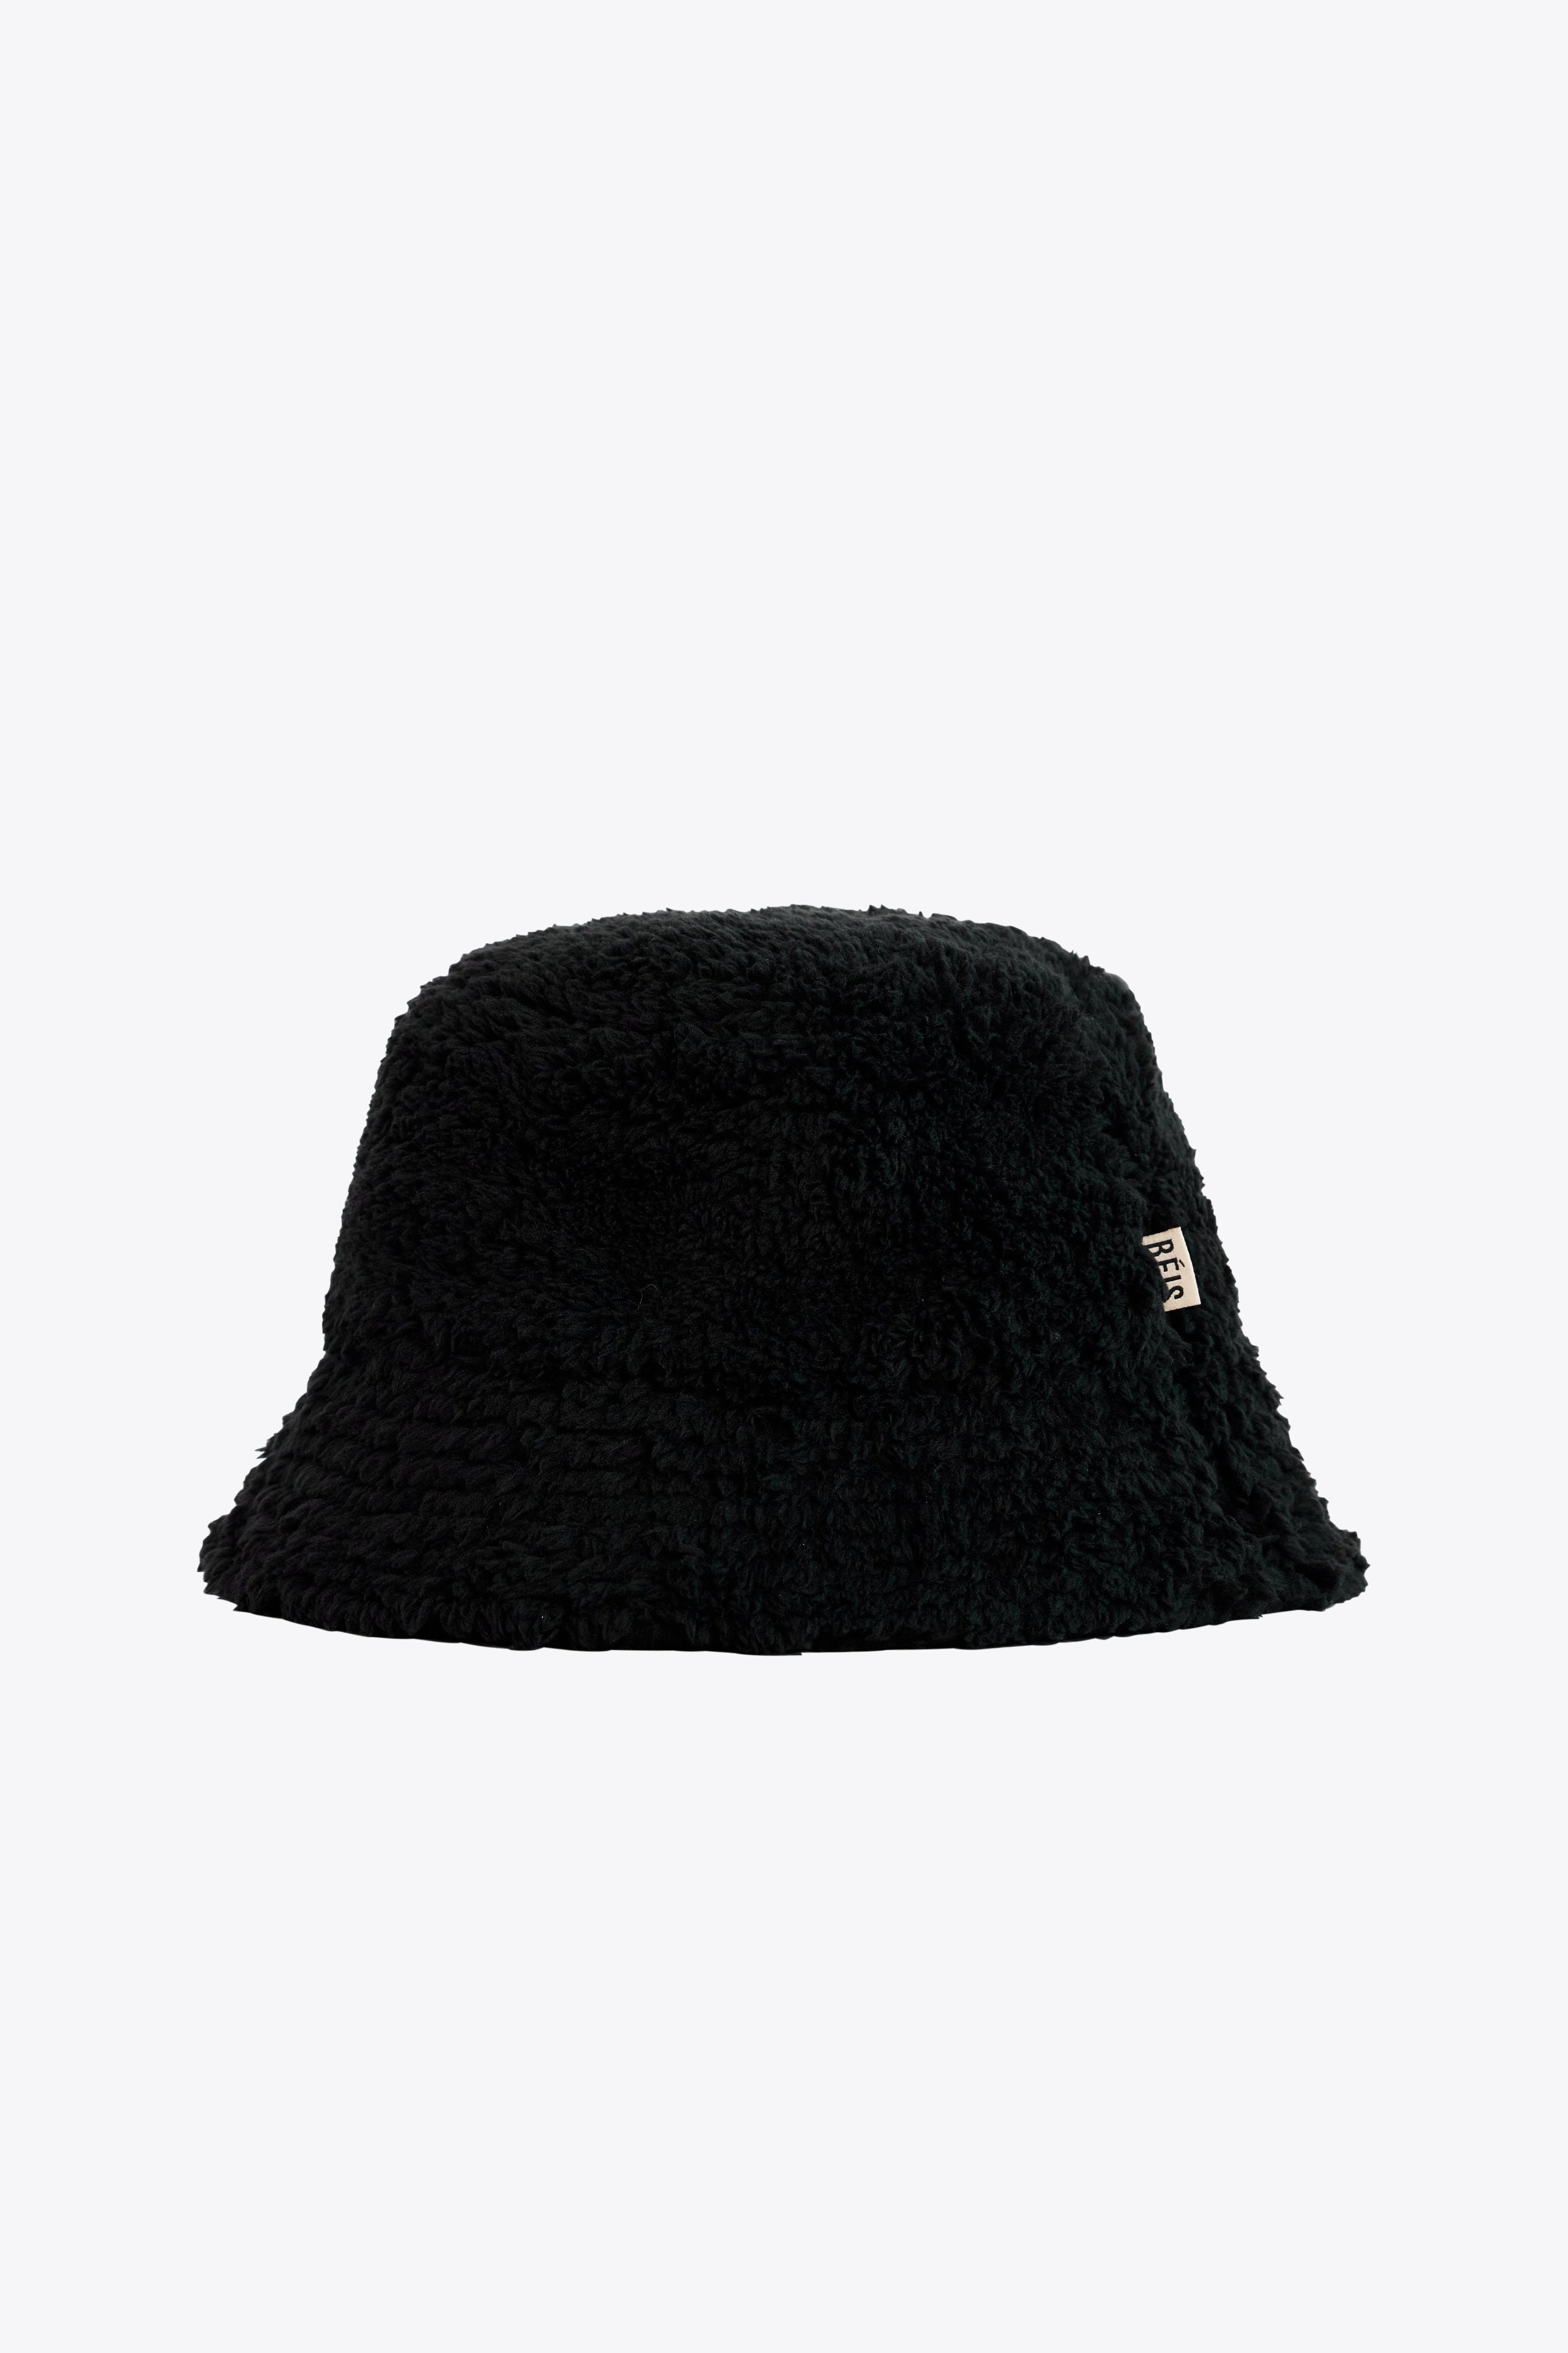 BÉIS 'The Bucket Hat' in Black | BÉIS Travel CA